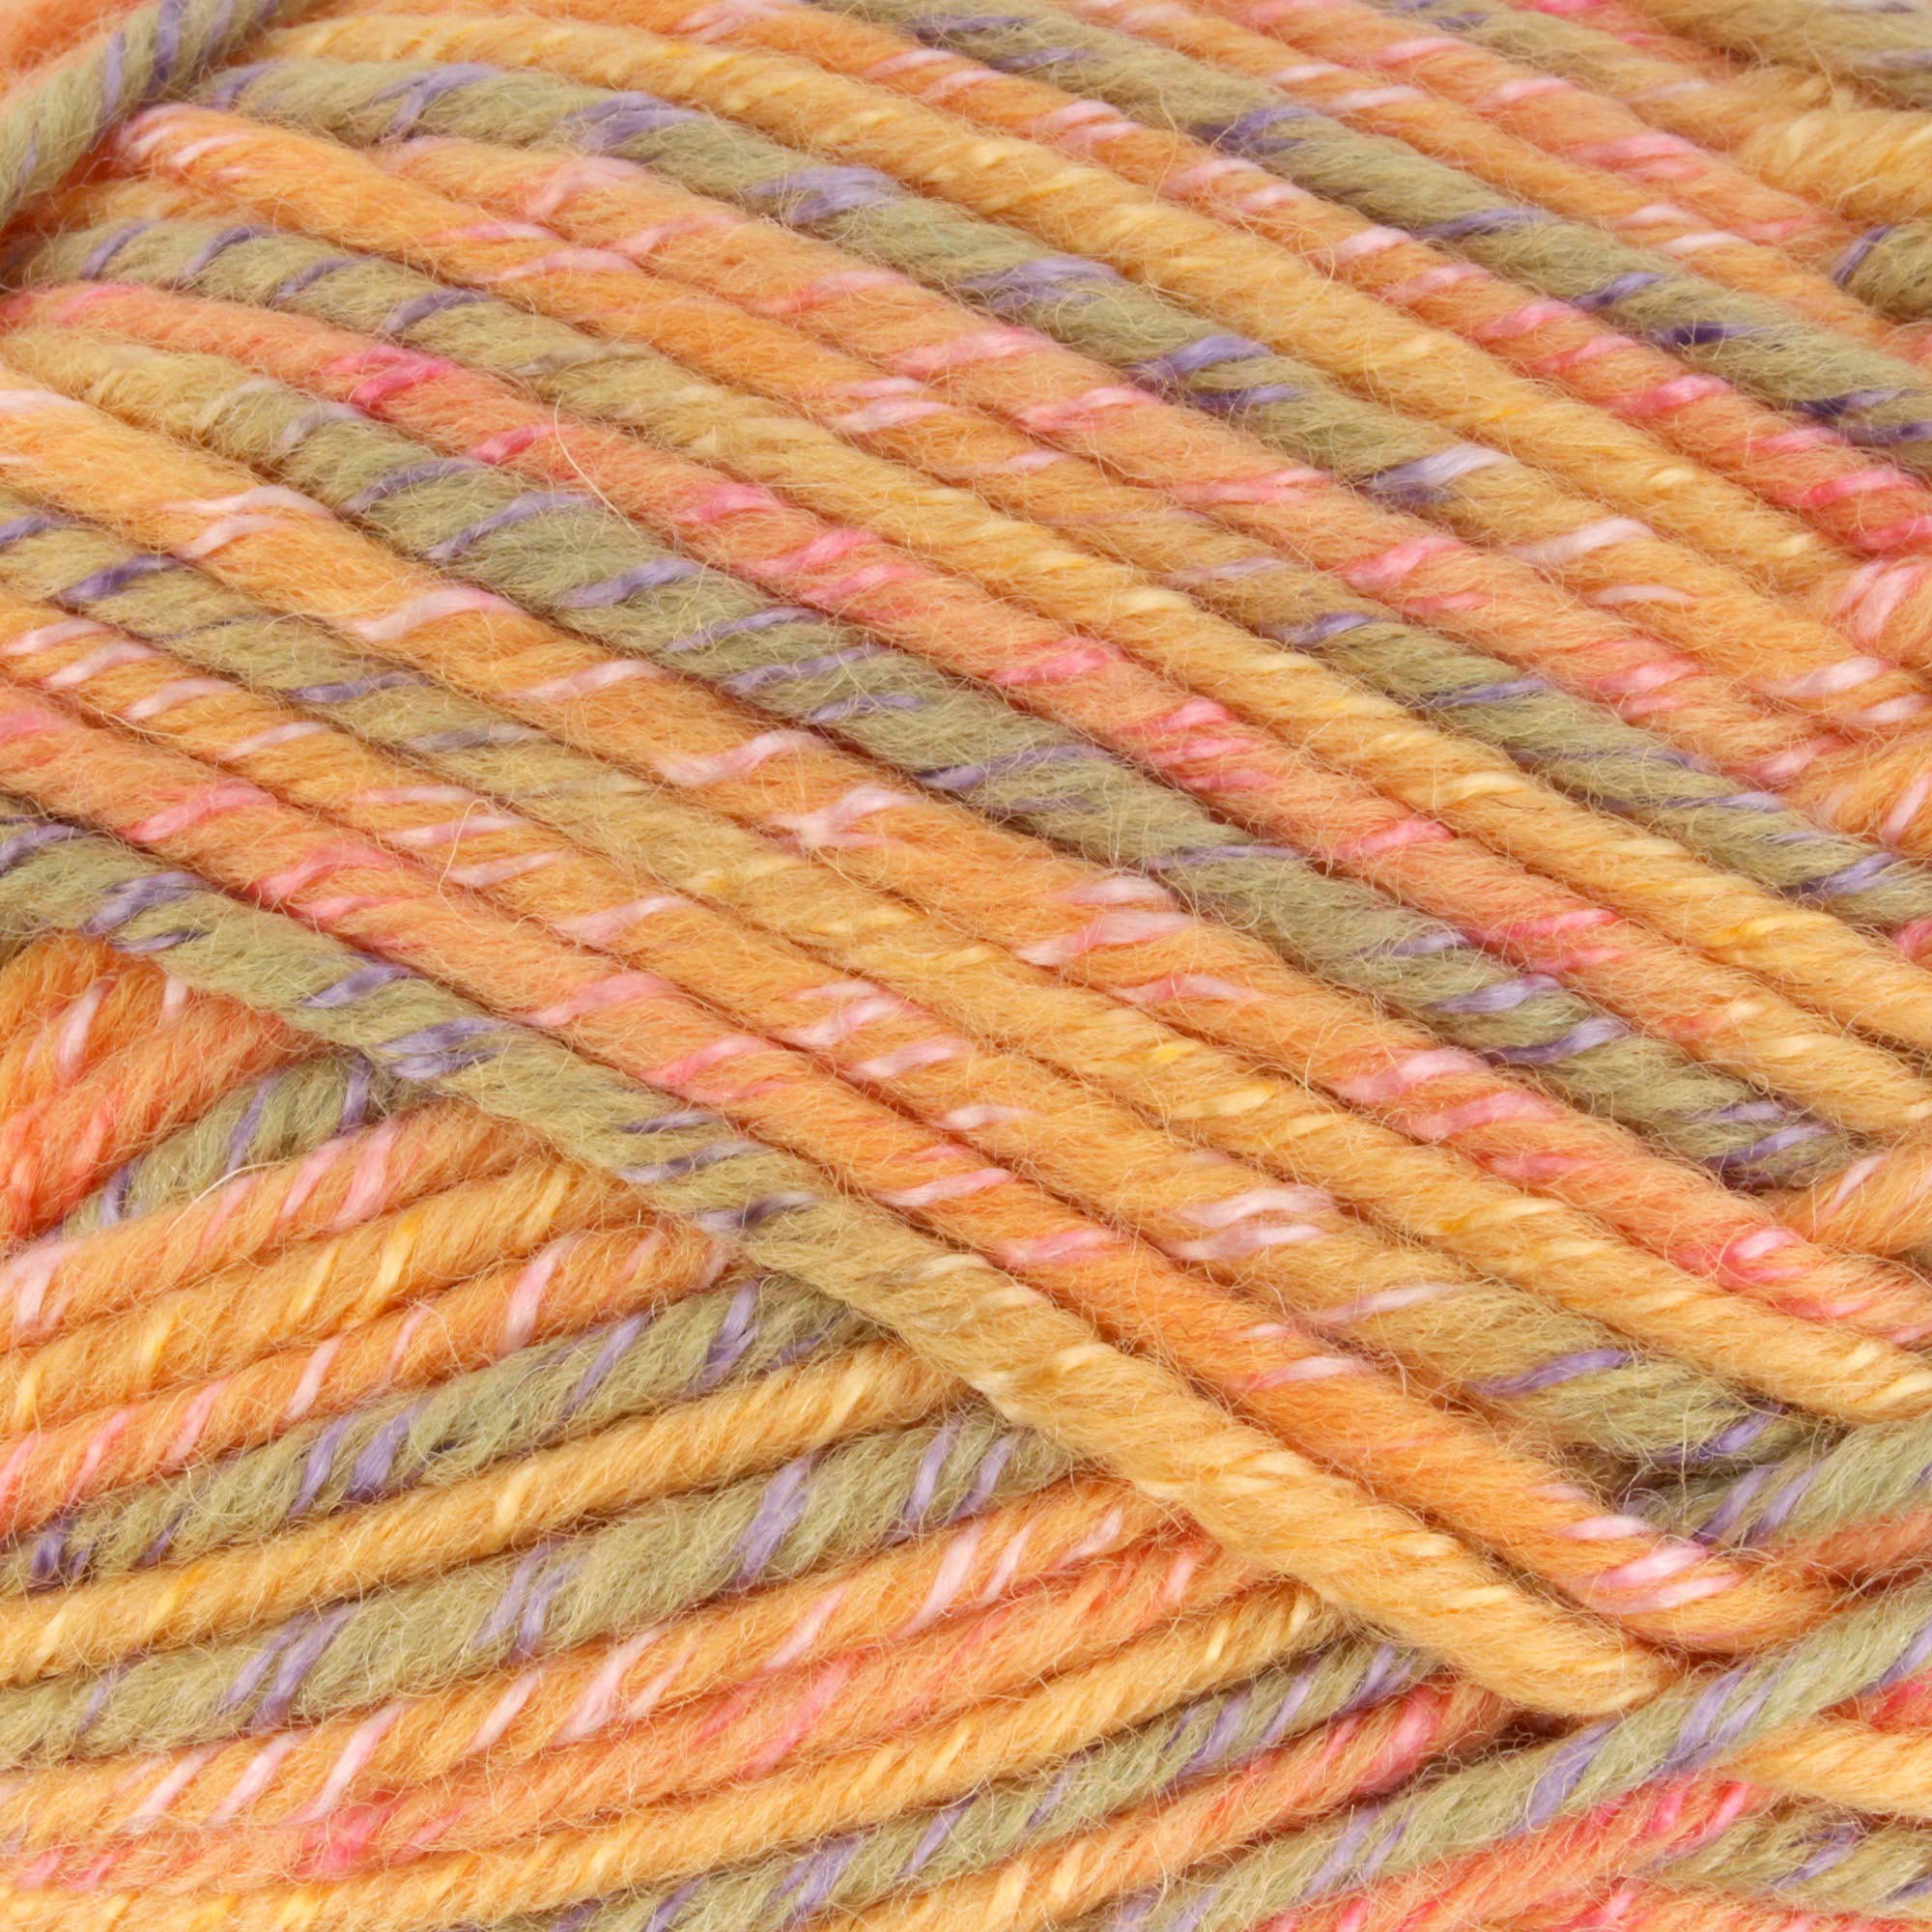  JubileeYarn Fishnet & Pom Pom Fishnet Yarn - 70% Acrylic 30%  Polyamide 100g/Skein - Variety Pack - 3 Skeins